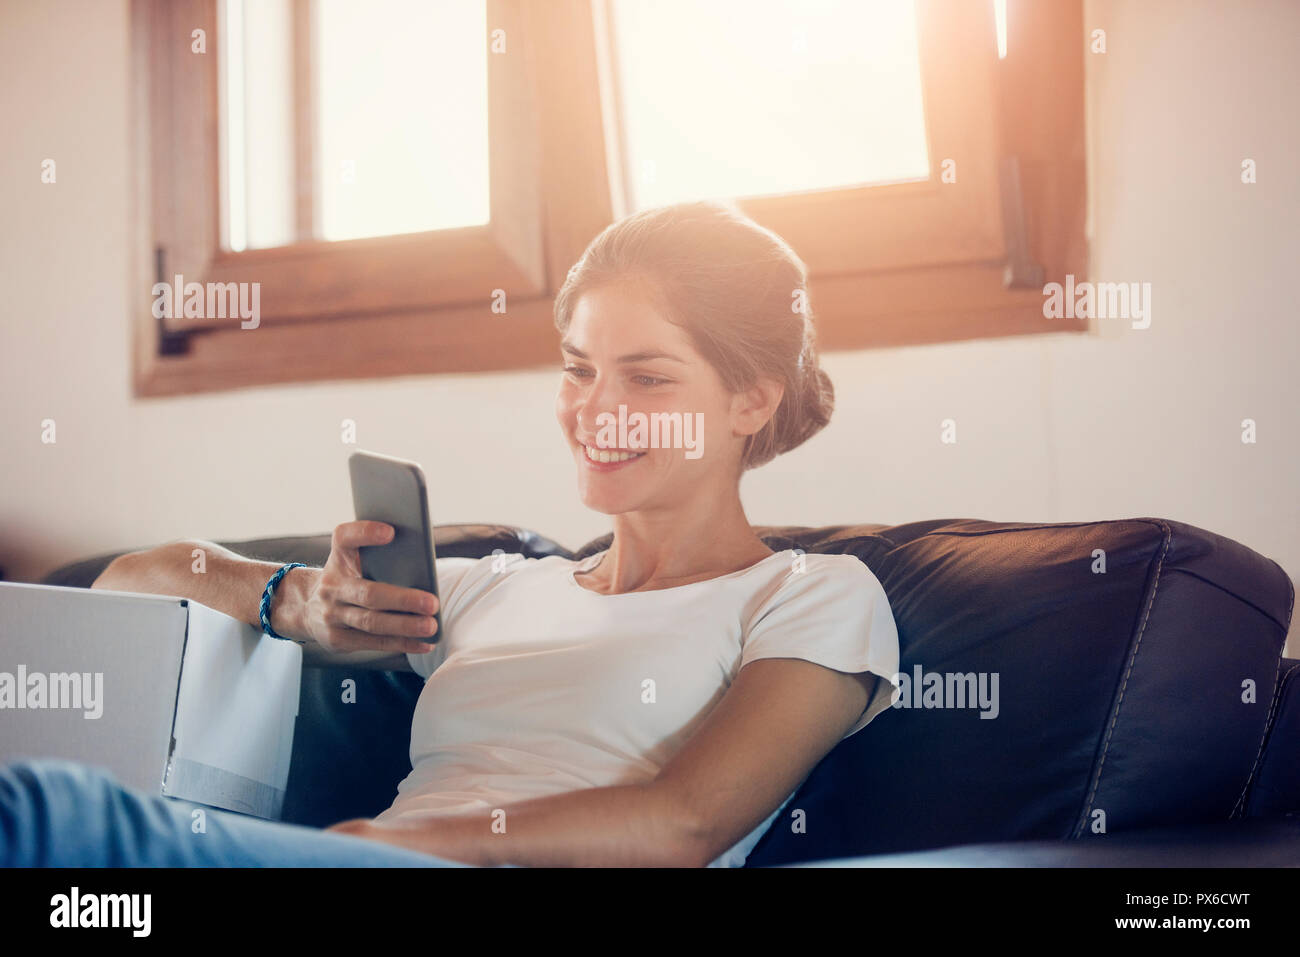 Eine schöne junge Frau kommuniziert durch Ihre Smart Phone, neben einem Karton. Aufruf für den Mail Delivery Service. Stockfoto